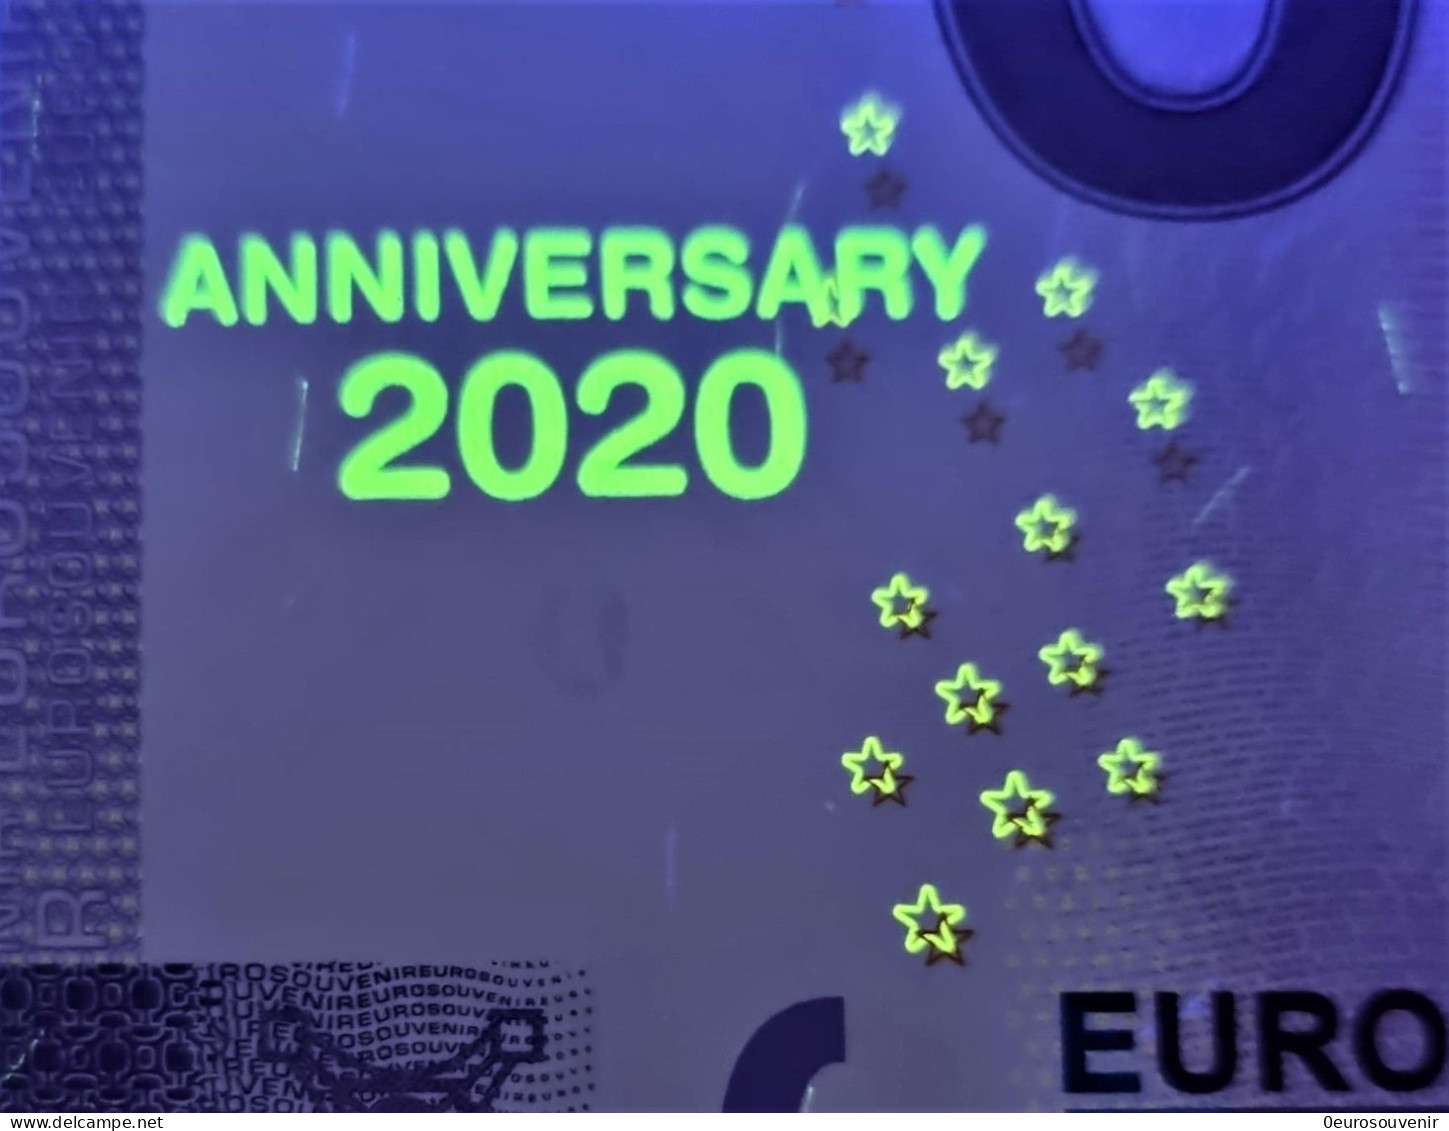 0-Euro XEEK 2021-1 SEA LIFE MÜNCHEN DEUTSCHLAND - GRÖẞTE HAI-VIELFALT Set NORMAL+ANNIVERSARY - Privatentwürfe